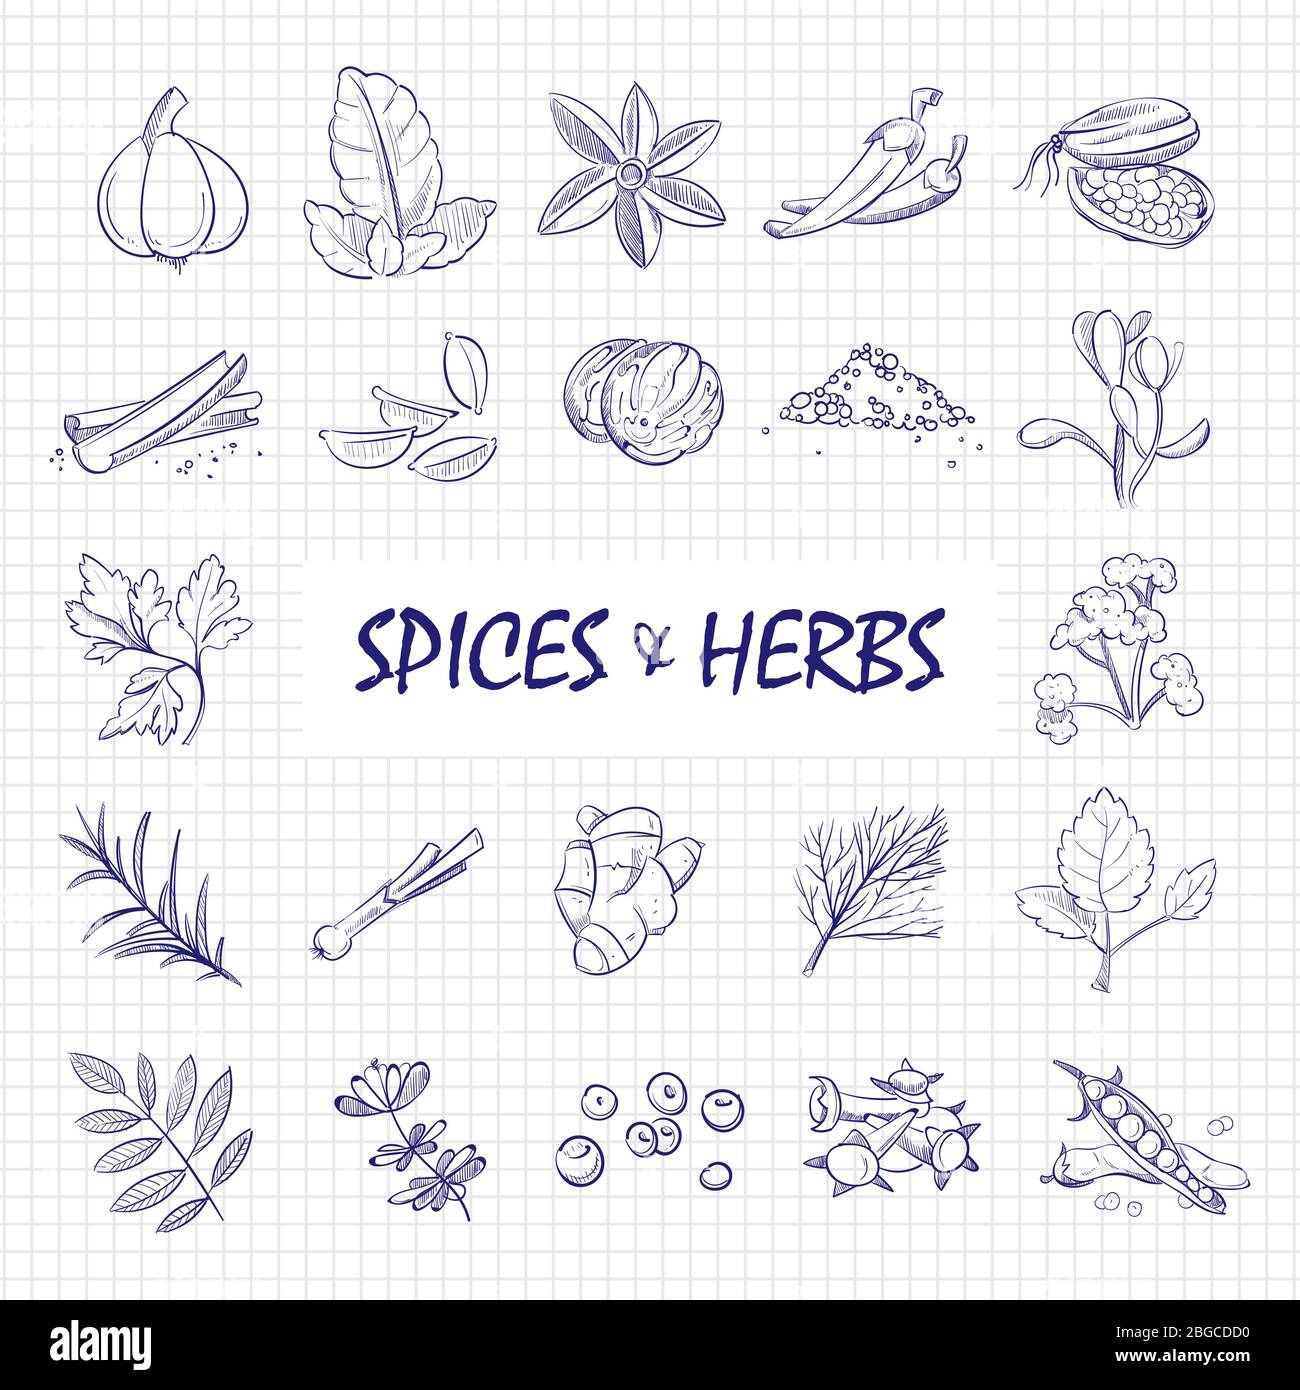 Especias y hierbas dibujadas a mano en la página del cuaderno. Hierbas y especias naturales, perejil aroma de hojas, romero y jengibre. Ilustración vectorial Ilustración del Vector